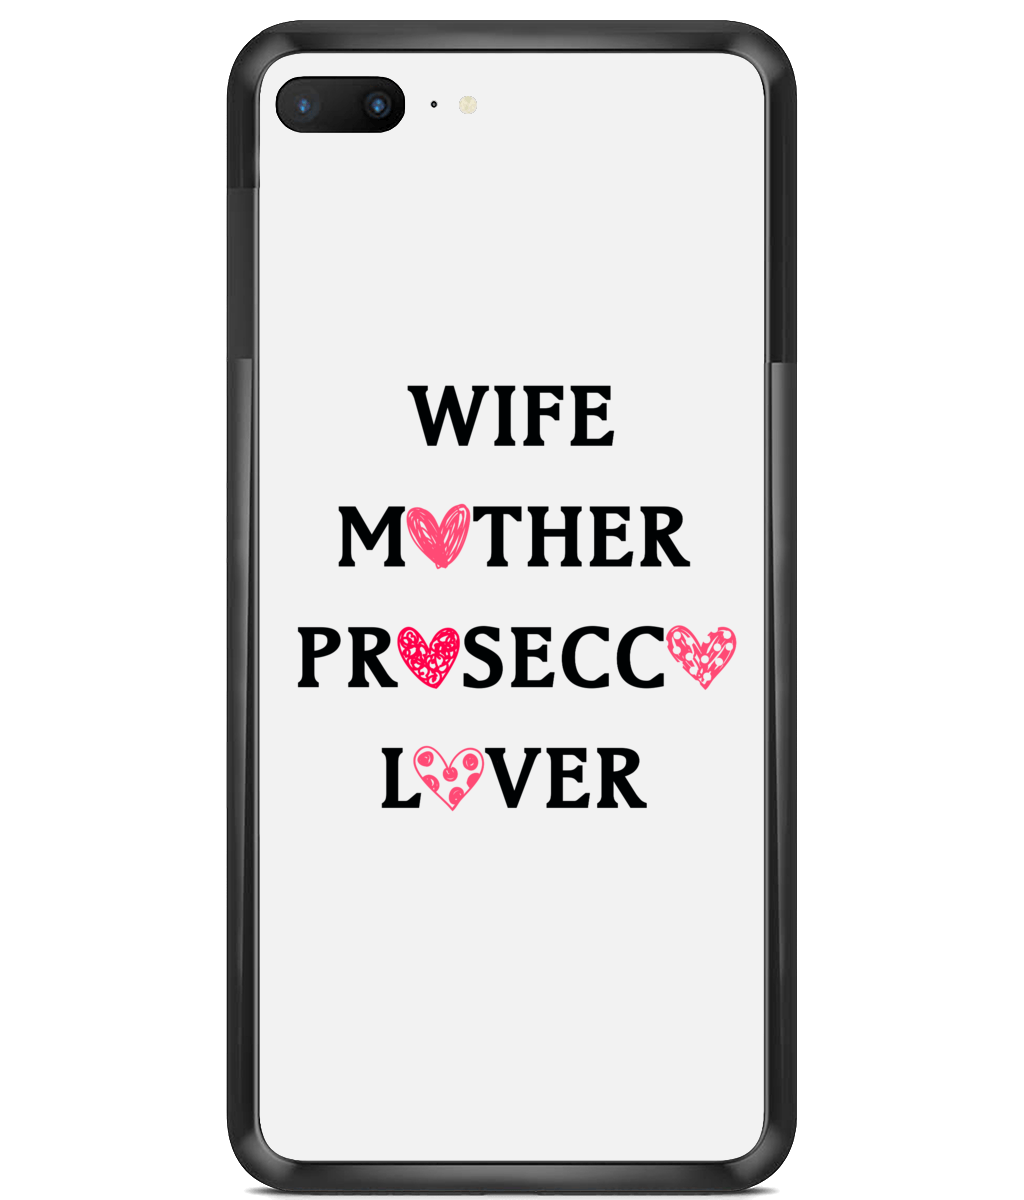 Prosecco Premium Hard Phone Cases